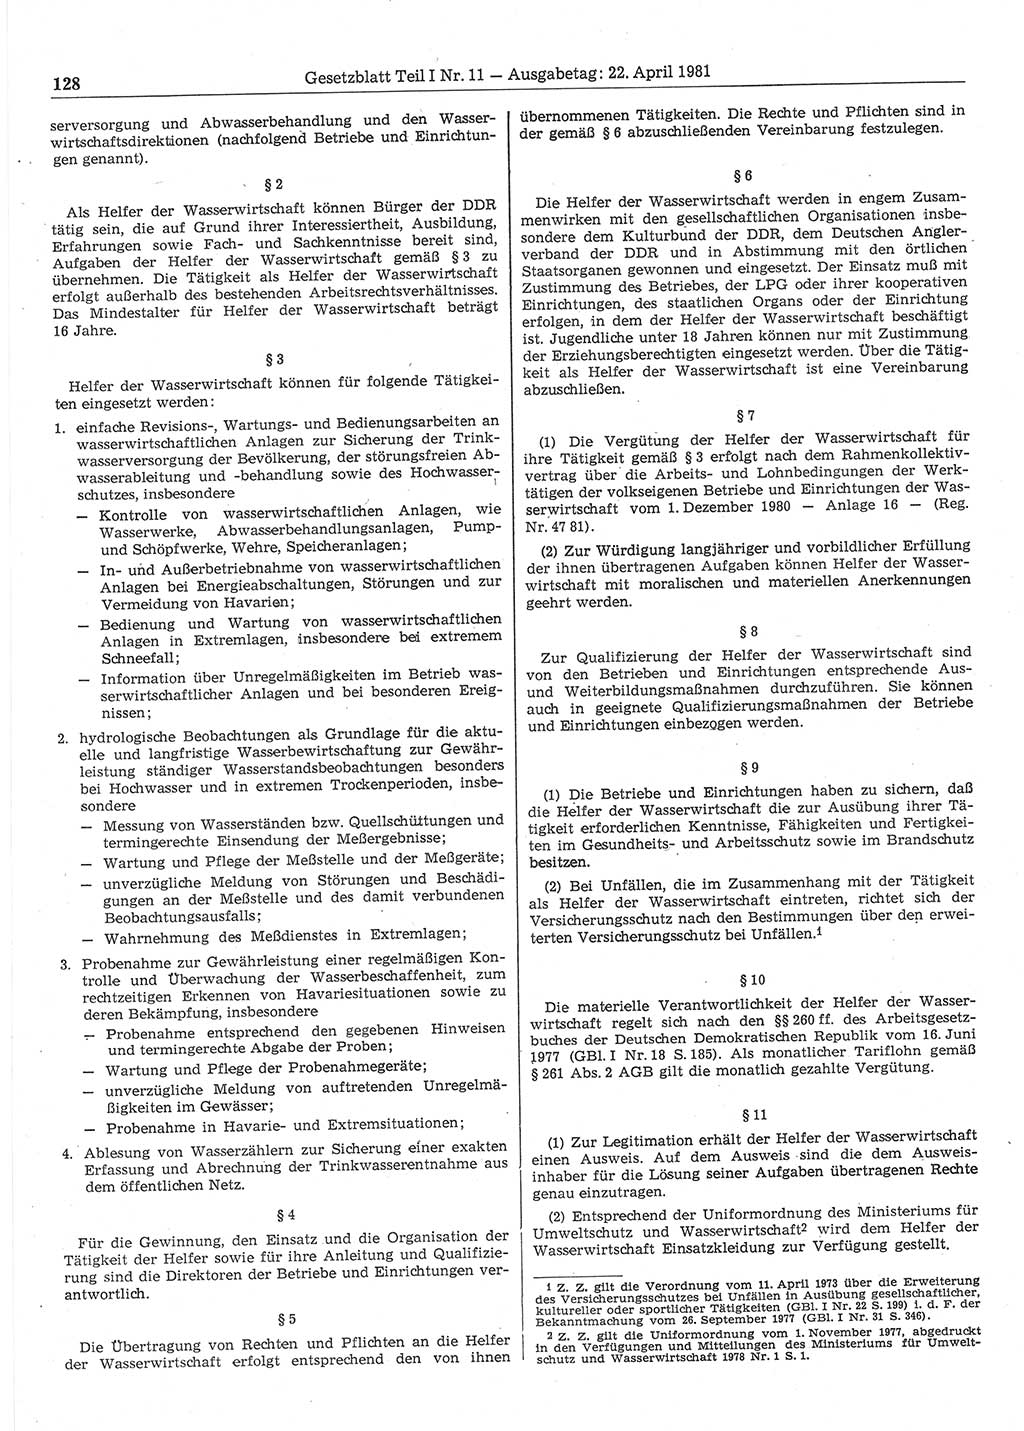 Gesetzblatt (GBl.) der Deutschen Demokratischen Republik (DDR) Teil Ⅰ 1981, Seite 128 (GBl. DDR Ⅰ 1981, S. 128)